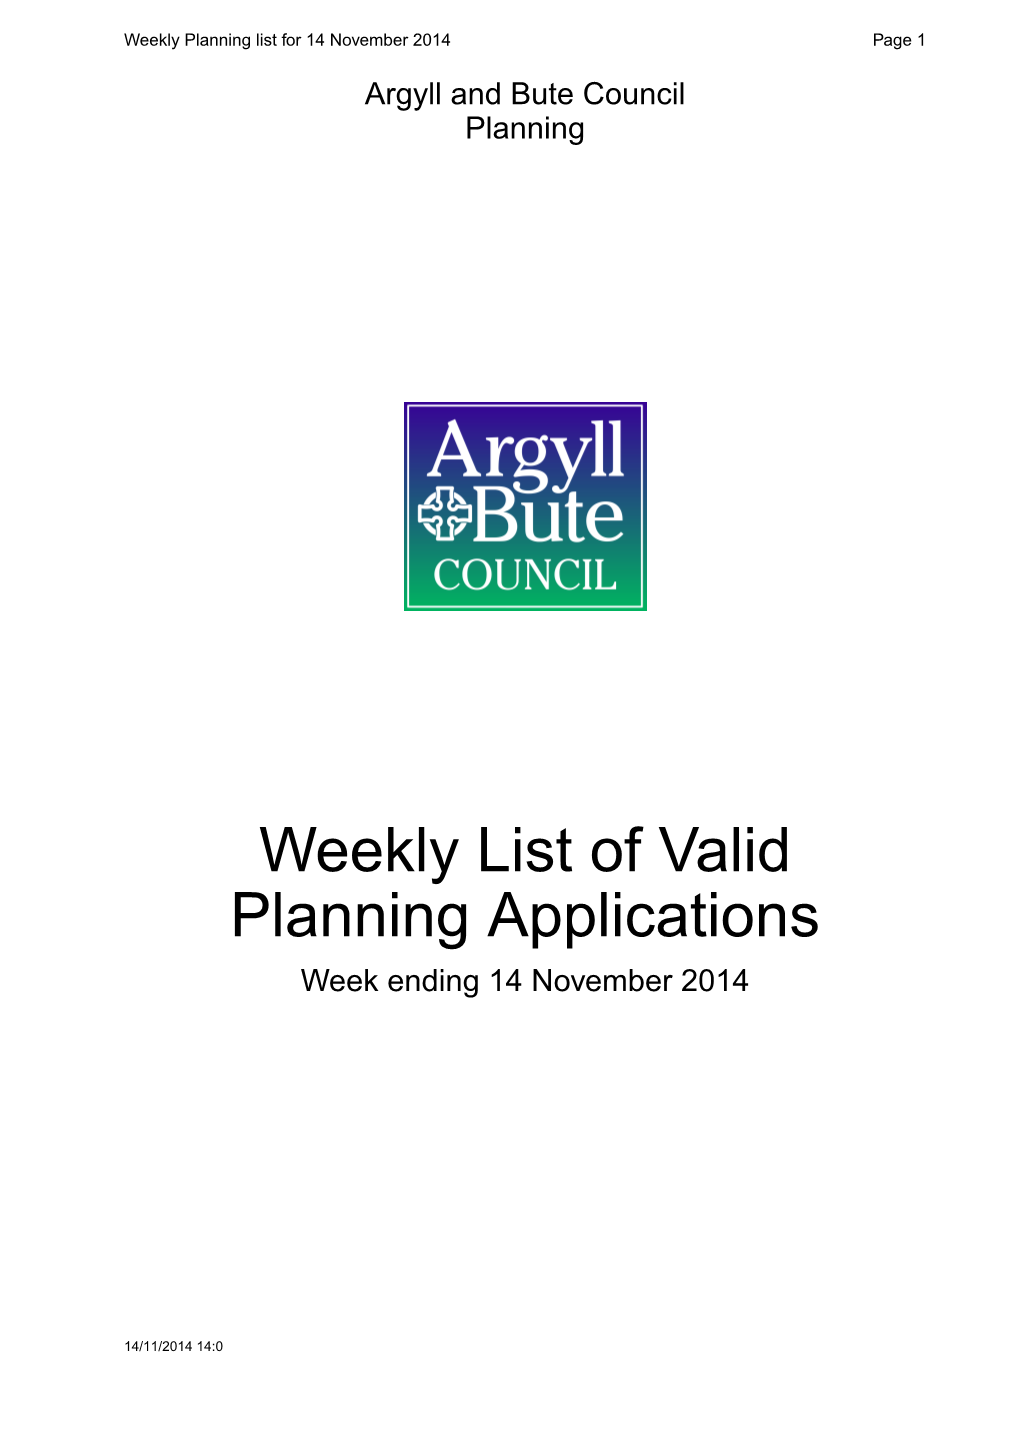 Weekly List of Valid Planning Applications Week Ending 14 November 2014